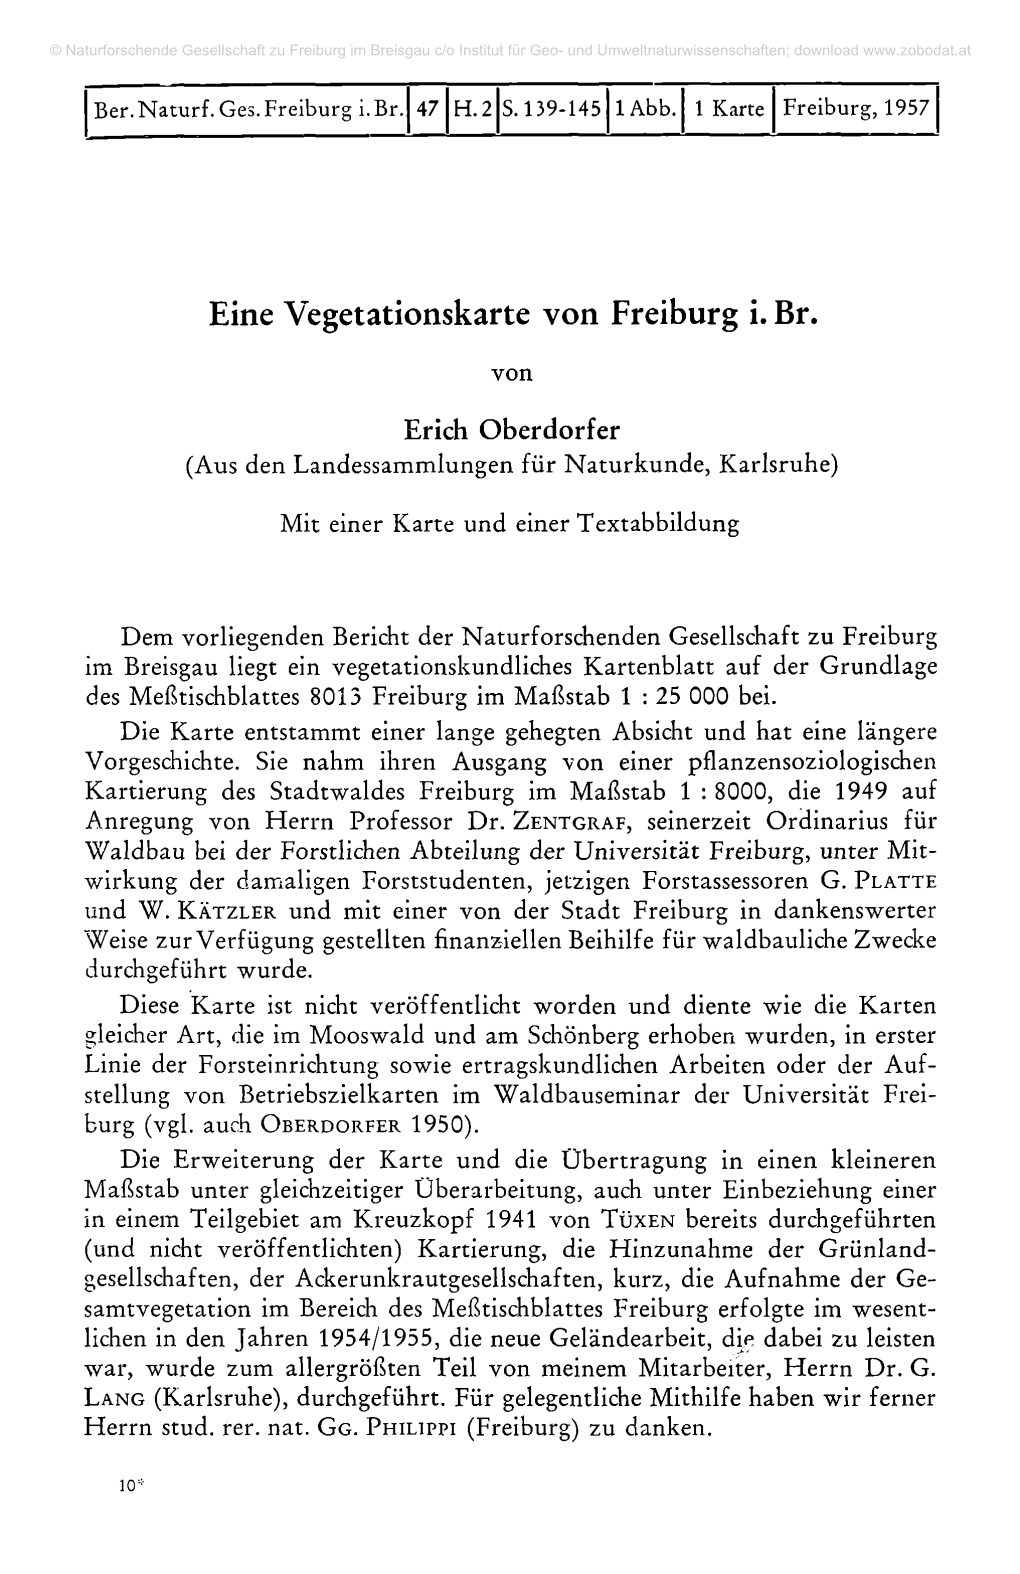 Eine Vegetationskarte Von Freiburg I. Br